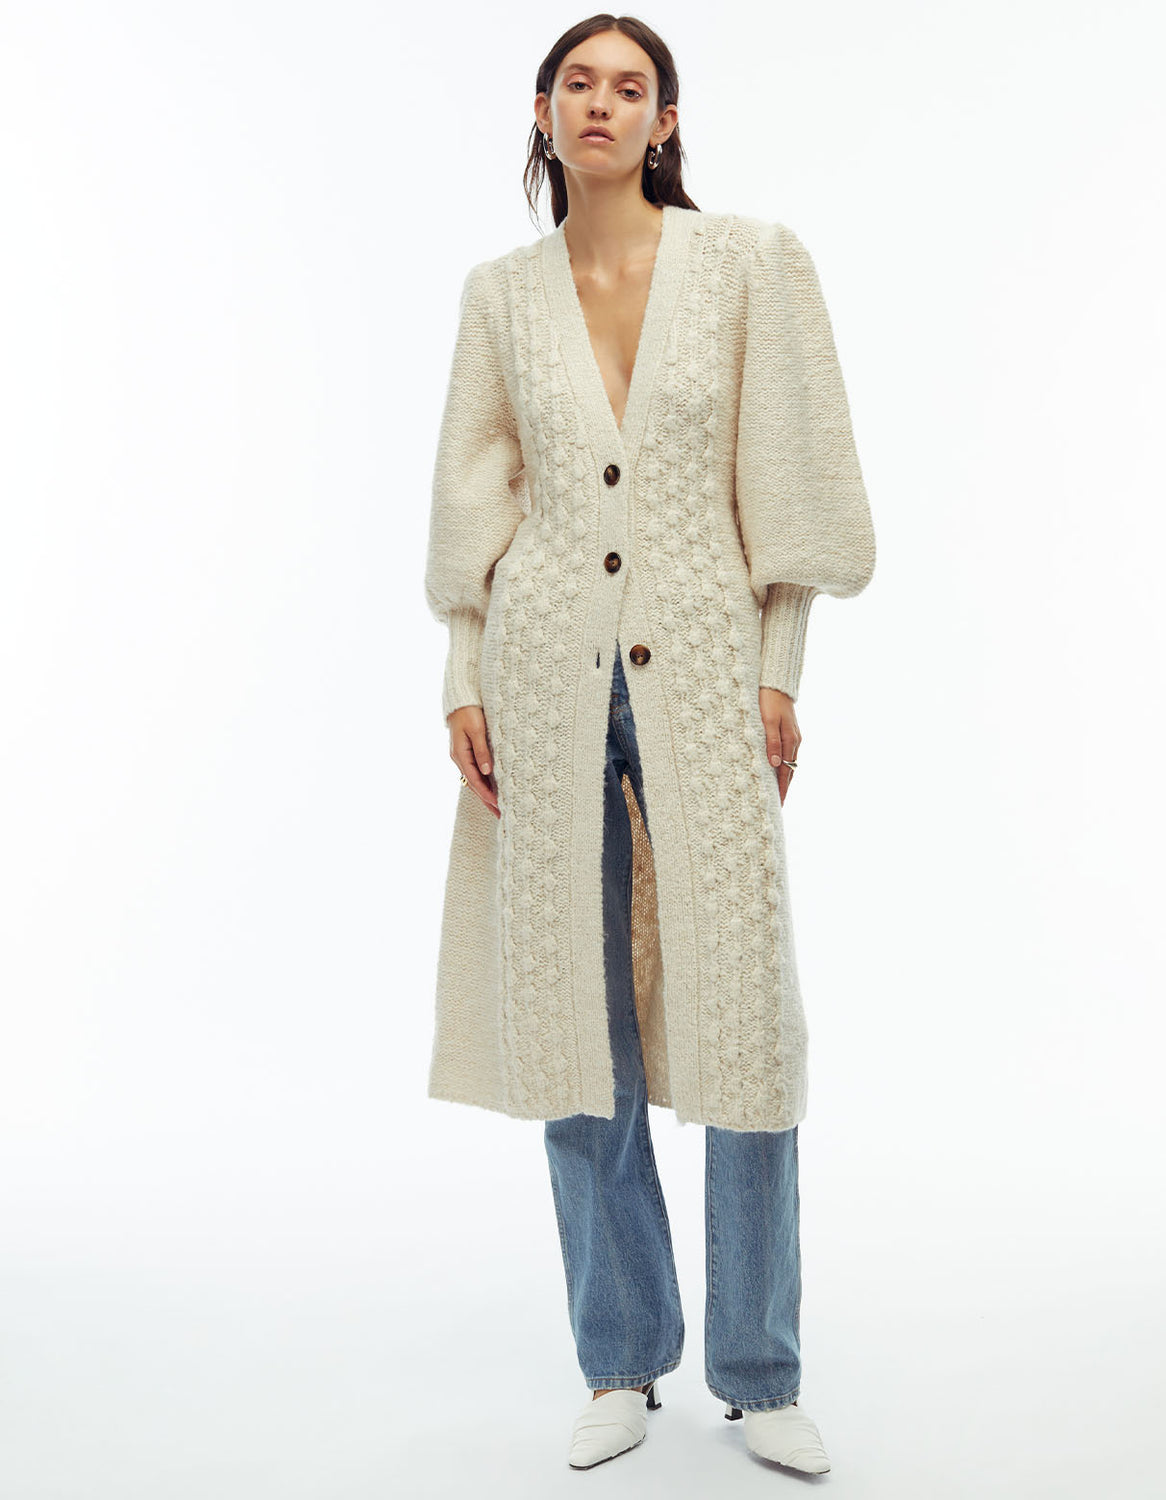 Look 5 - Camille Cardi Coat